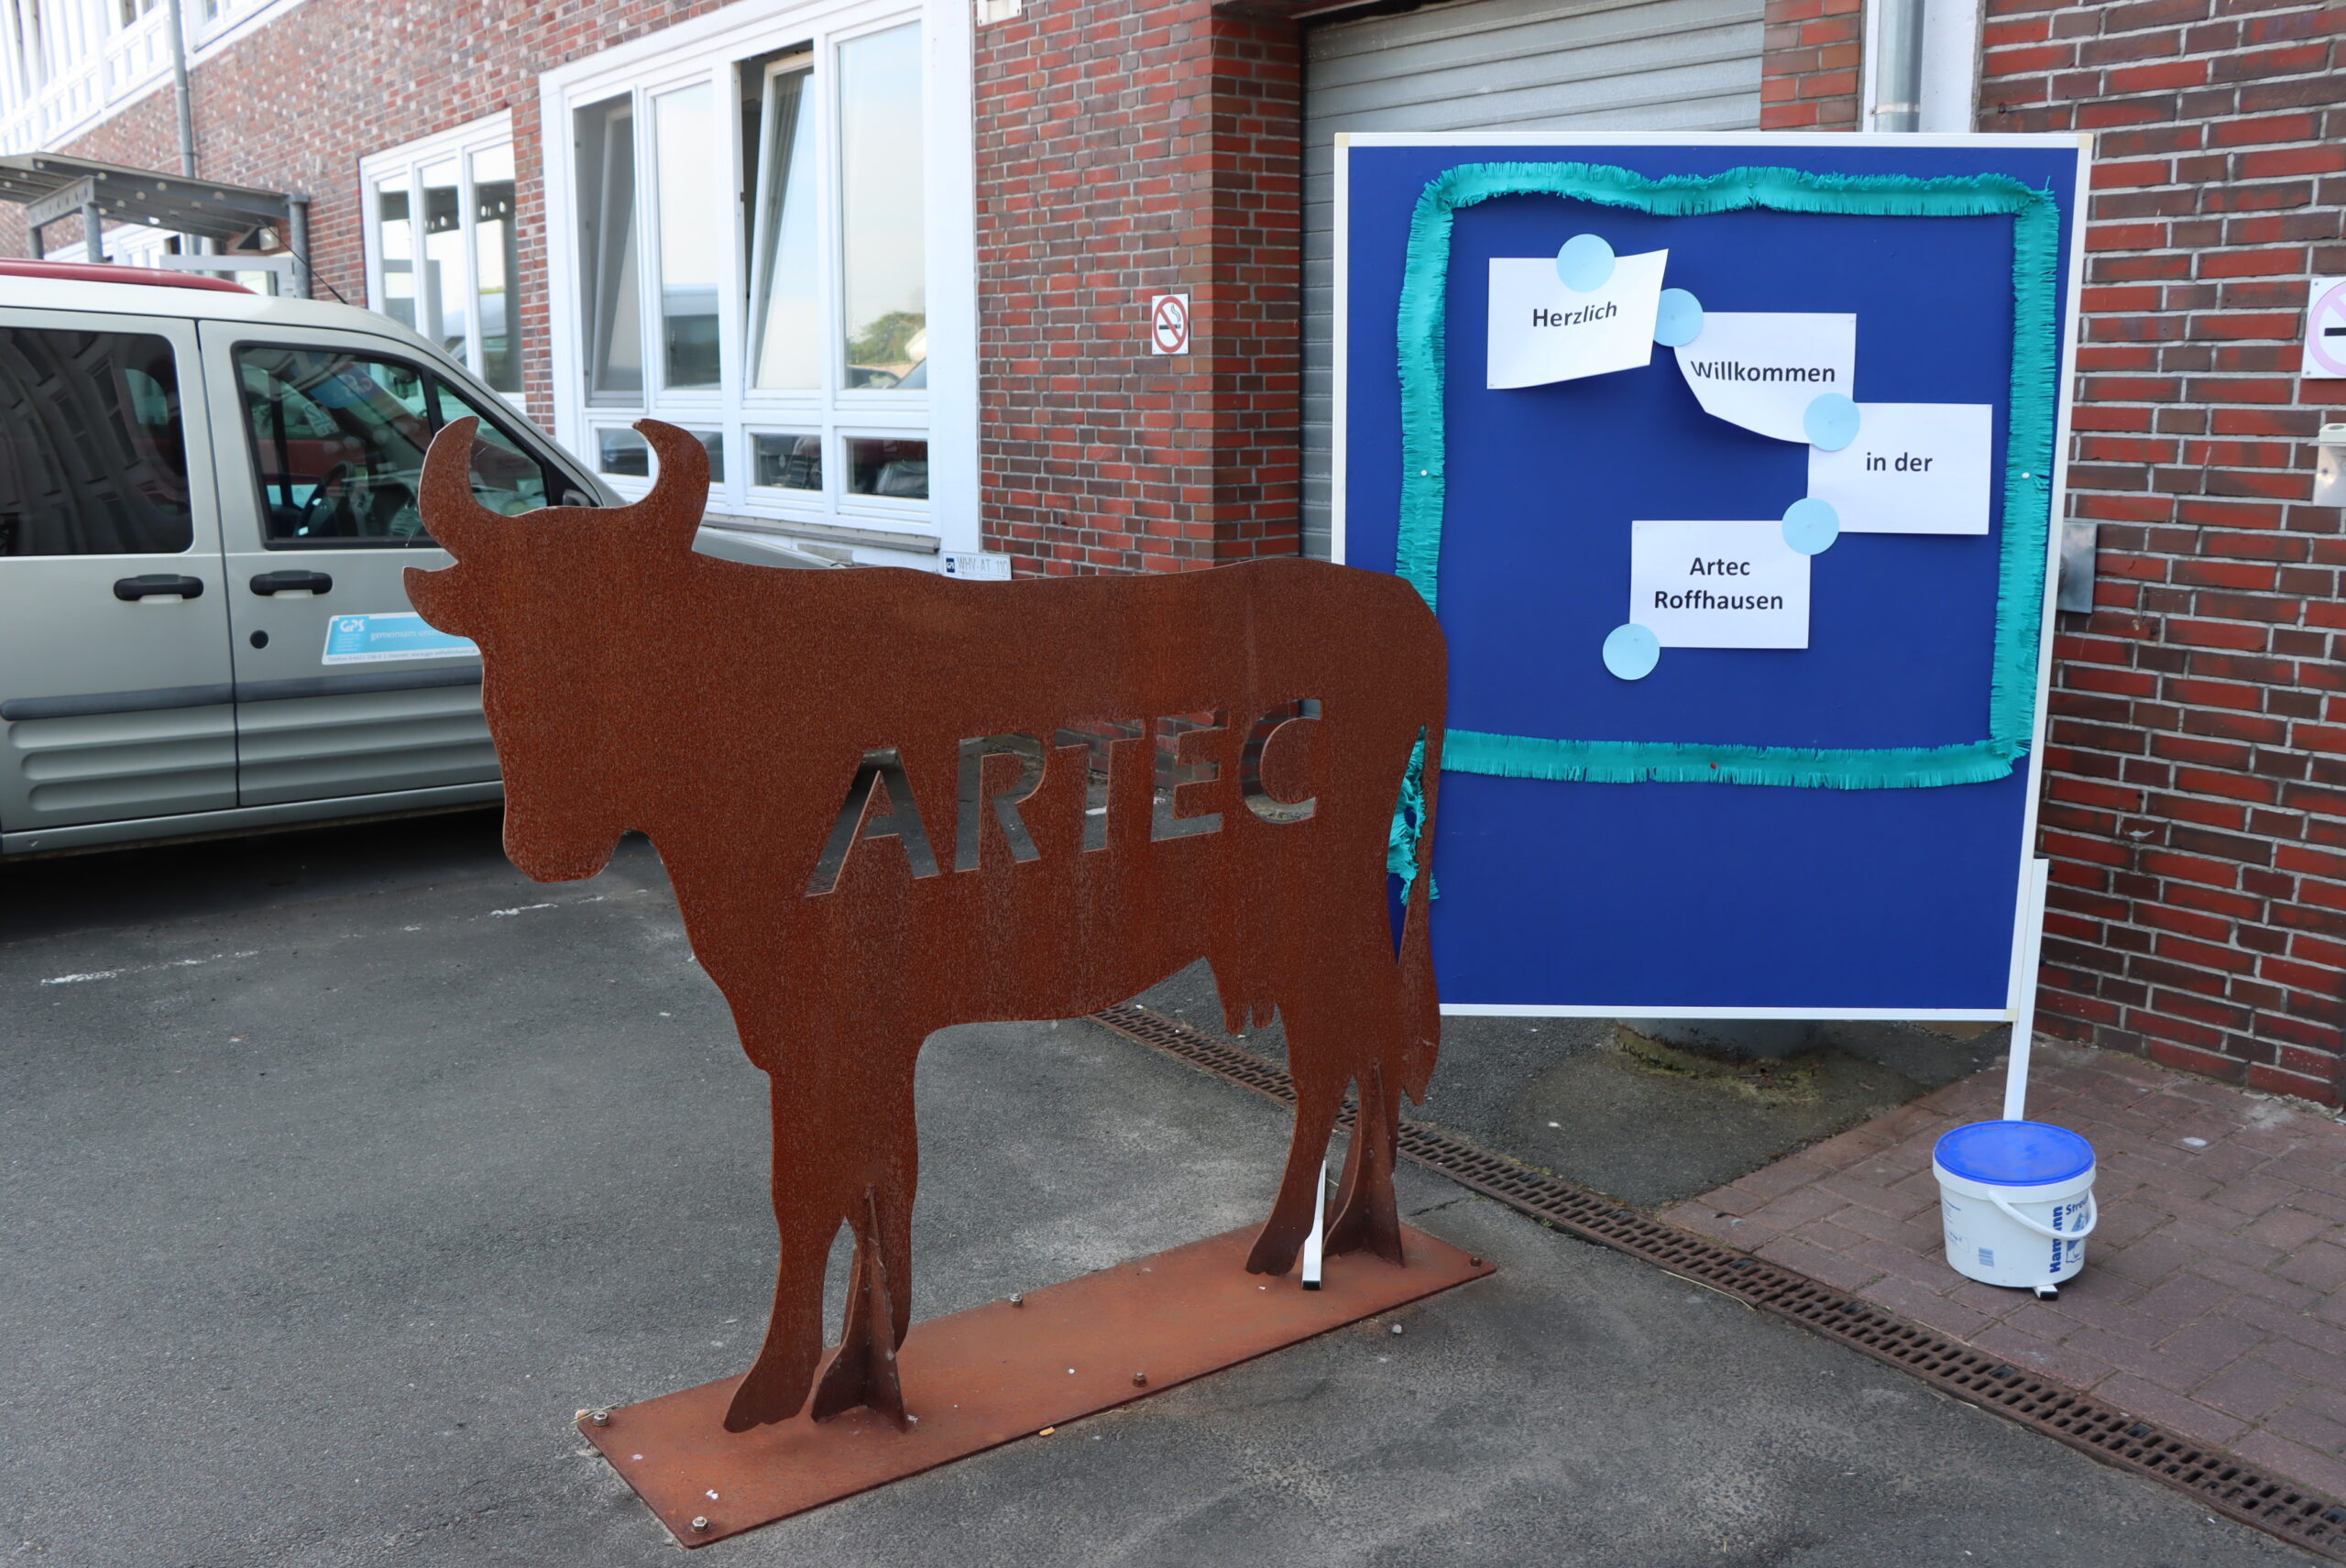 Draußen vor dem Eingang der GPS ARTEC Roffhausen steht ein selbst gebauteter Stier aus Metall. Neben dem Stier ist eine Infotafel, wo daran auf Zetteln steht "Herzlich Willkommen in der Artec Roffhausen".